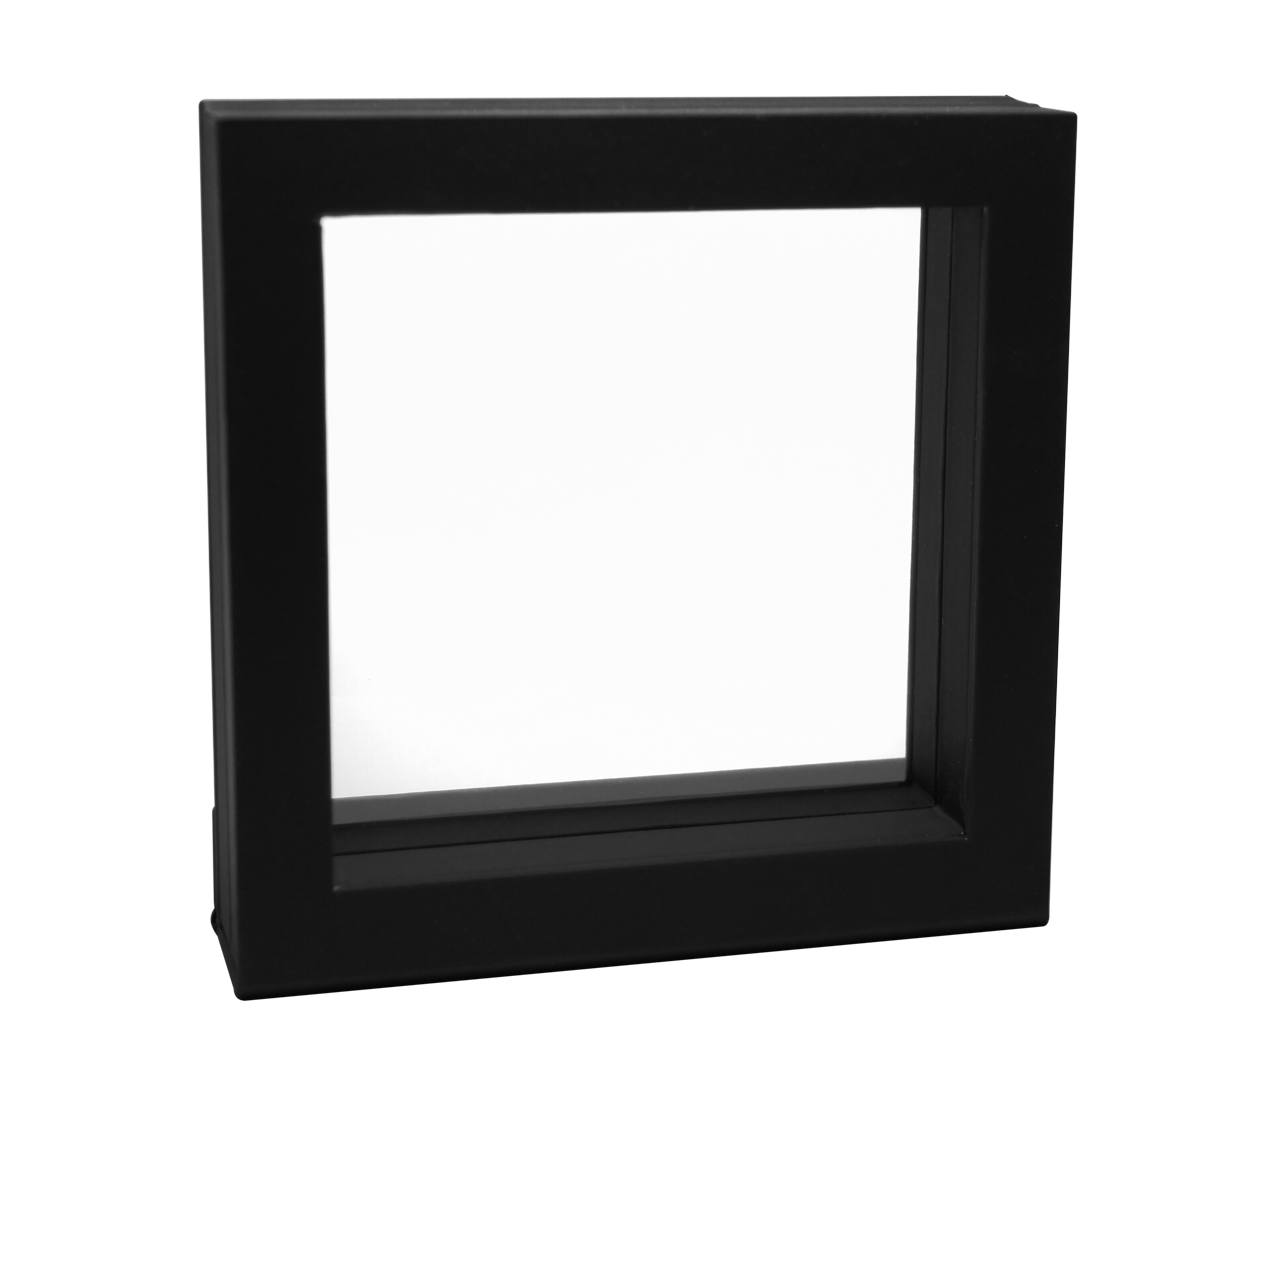 Object frame 100 x 100 mm inner dimension black